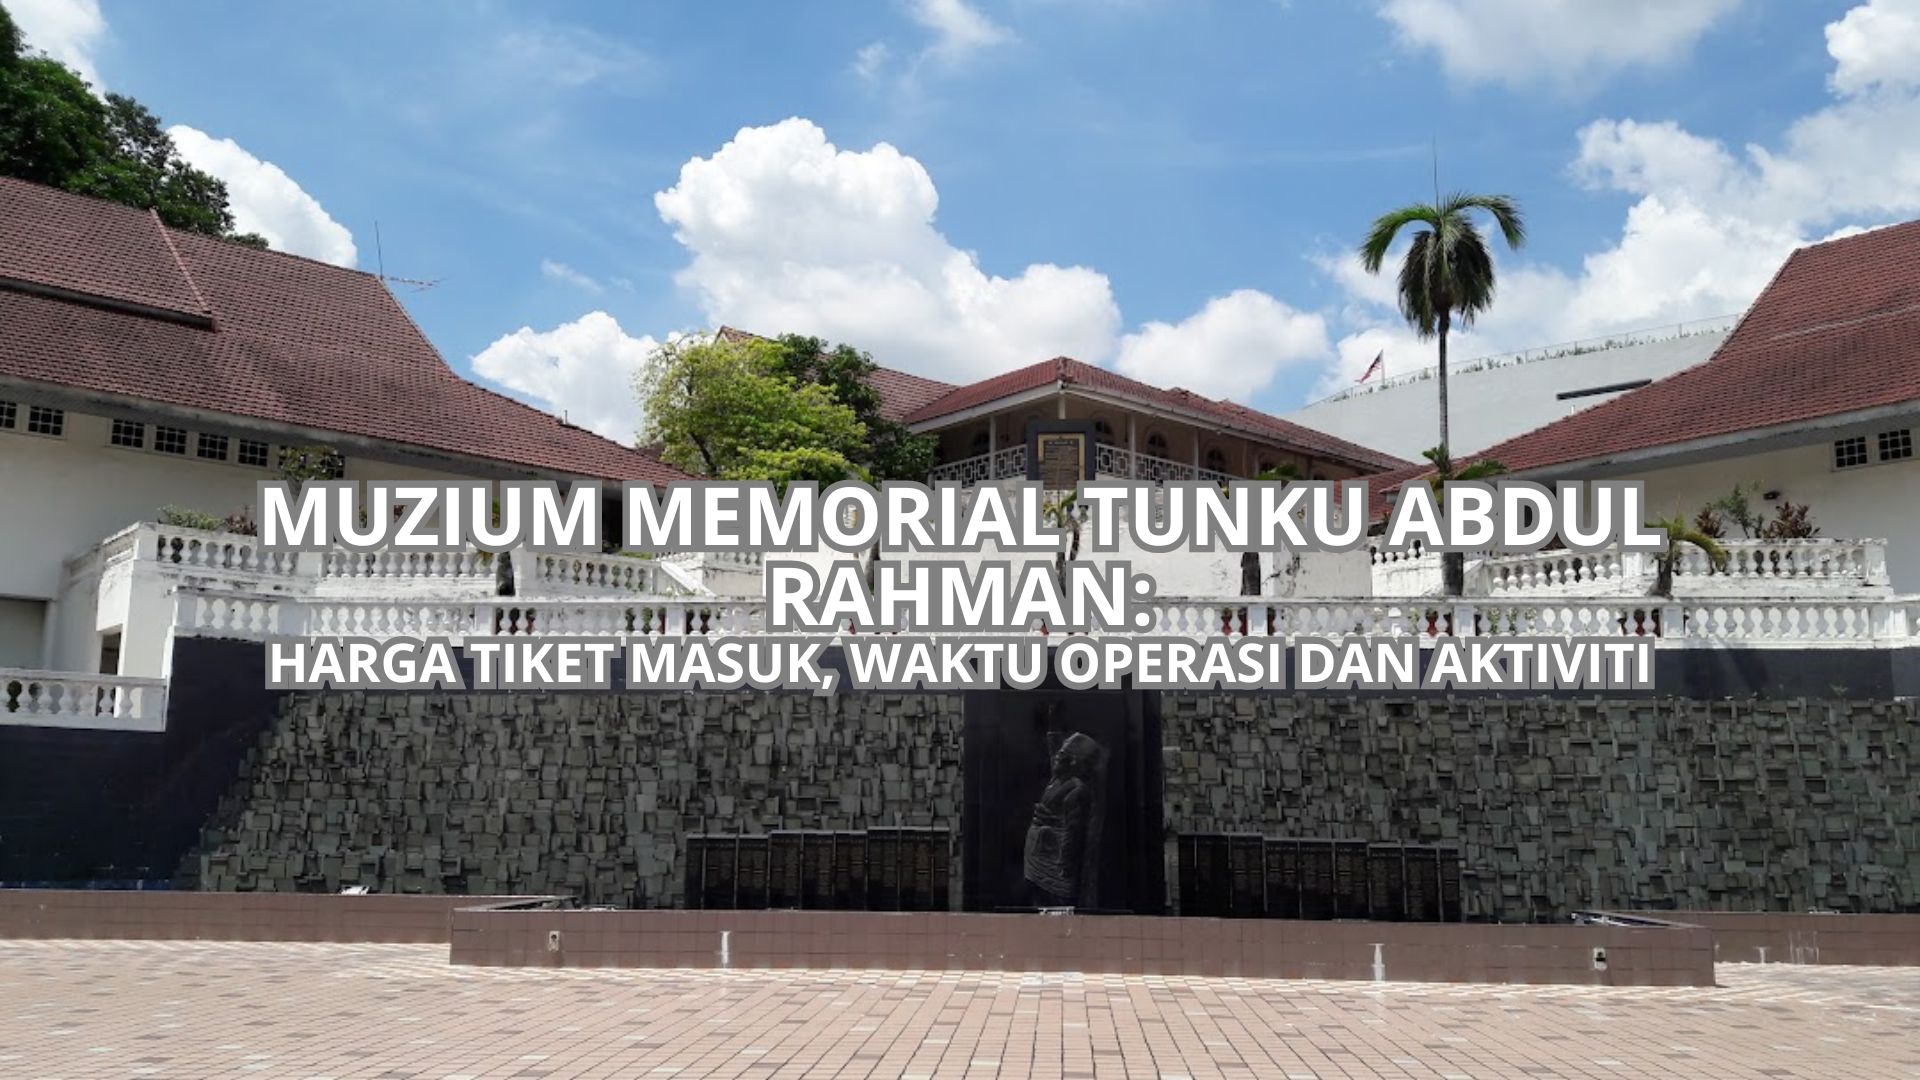 Muzium Memorial Tunku Abdul Rahman Cover